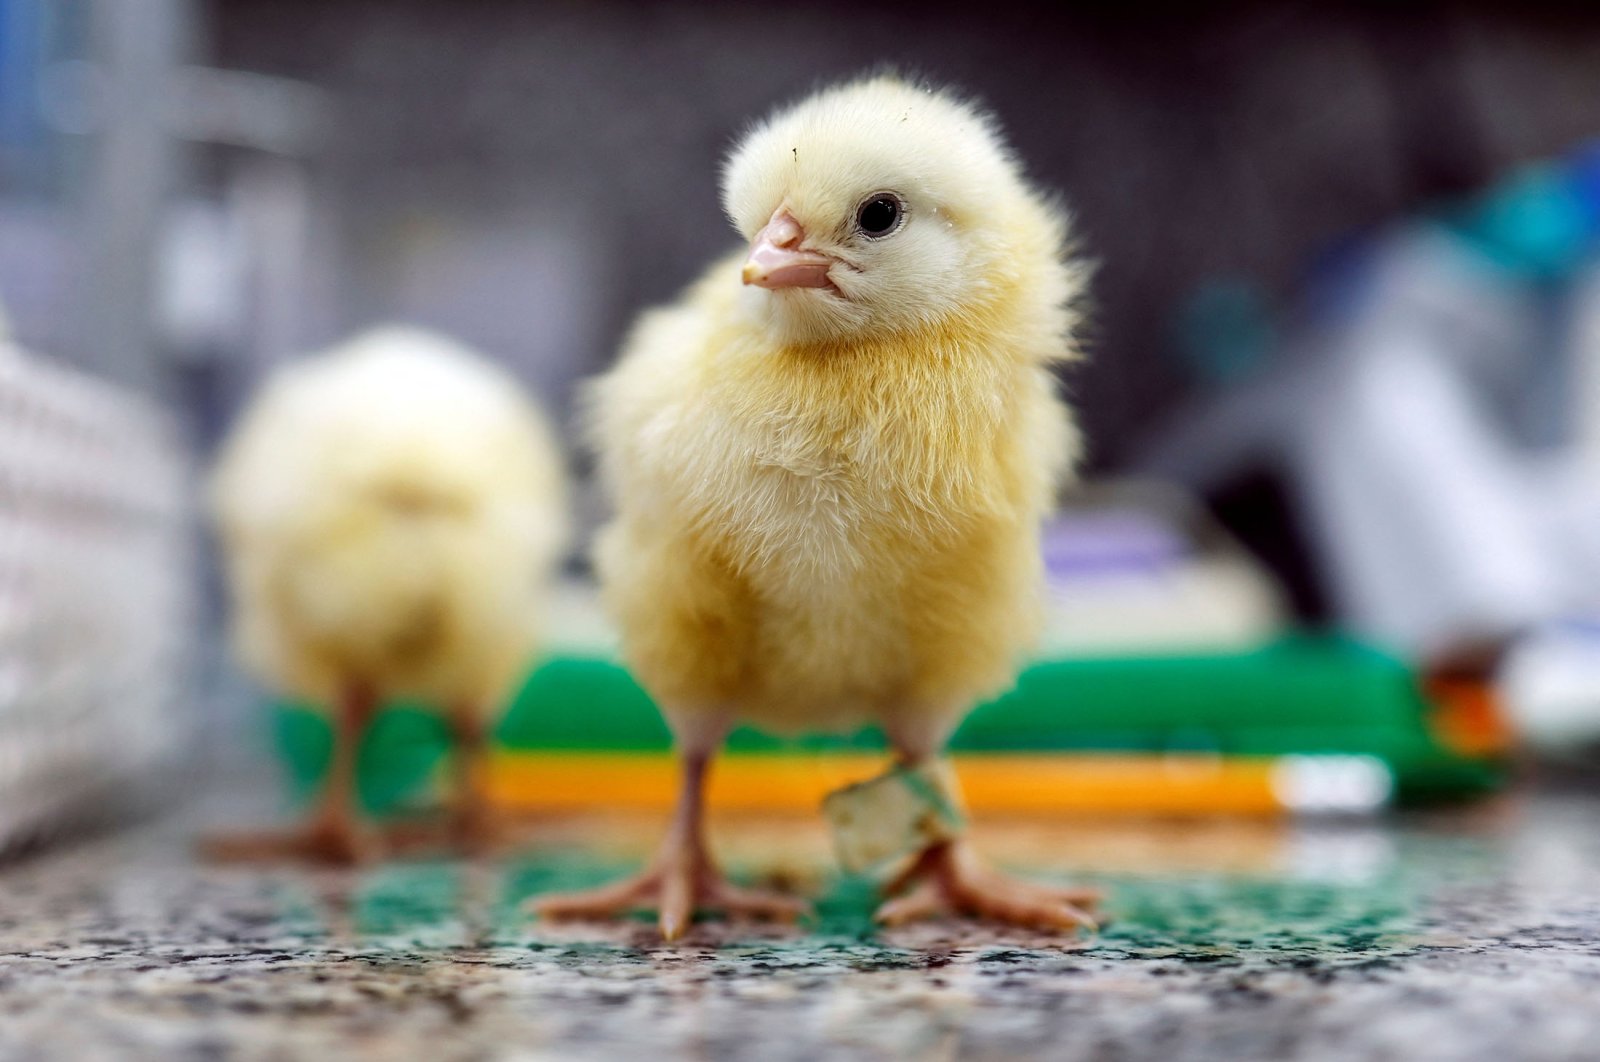 Teknologi gen dapat menyelamatkan anak ayam jantan berumur satu hari dari pemusnahan massal setiap tahun